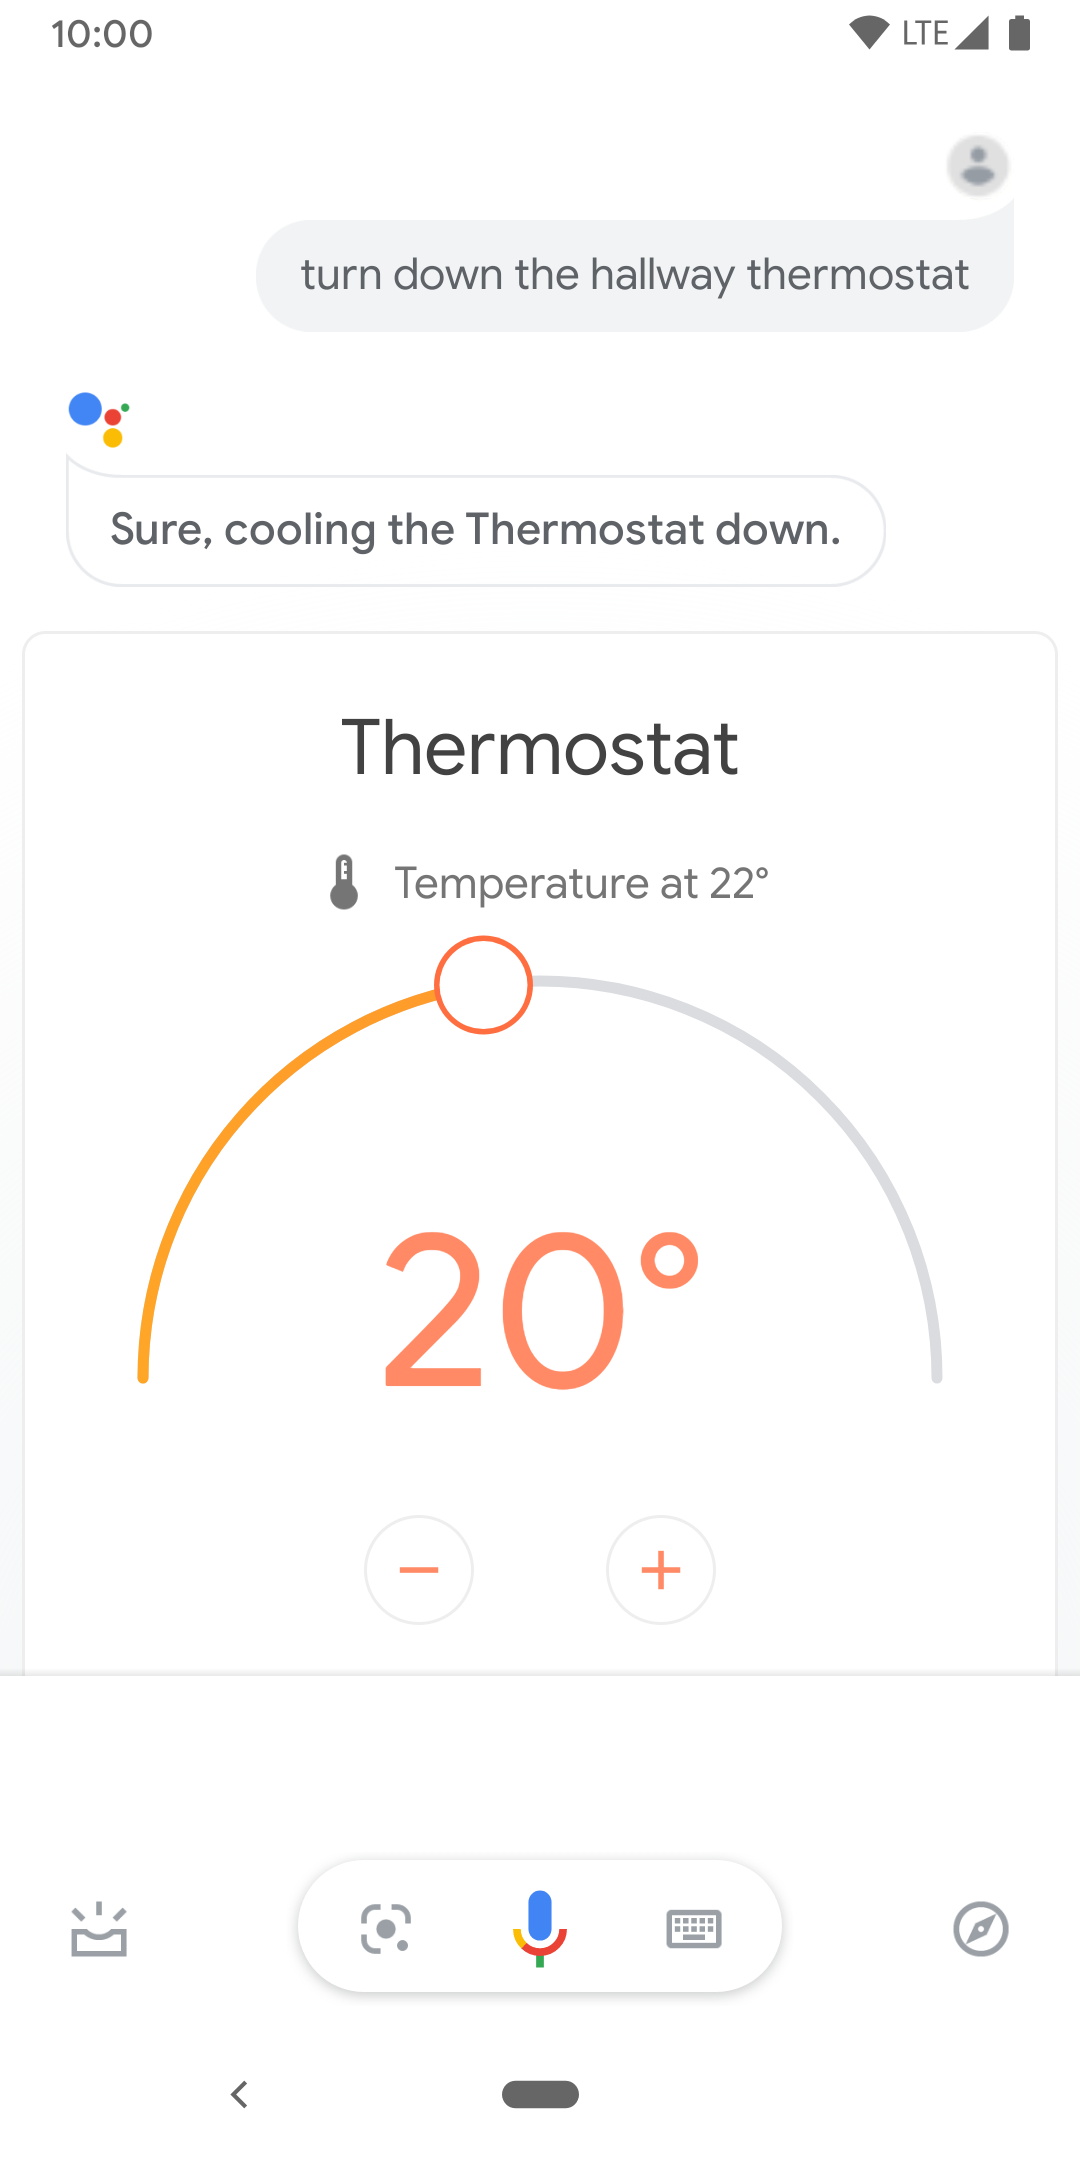 Bu resimde, koridor termostatının sıcaklığını kontrol etmek için kullanılan dokunma kontrolleri gösterilmektedir.